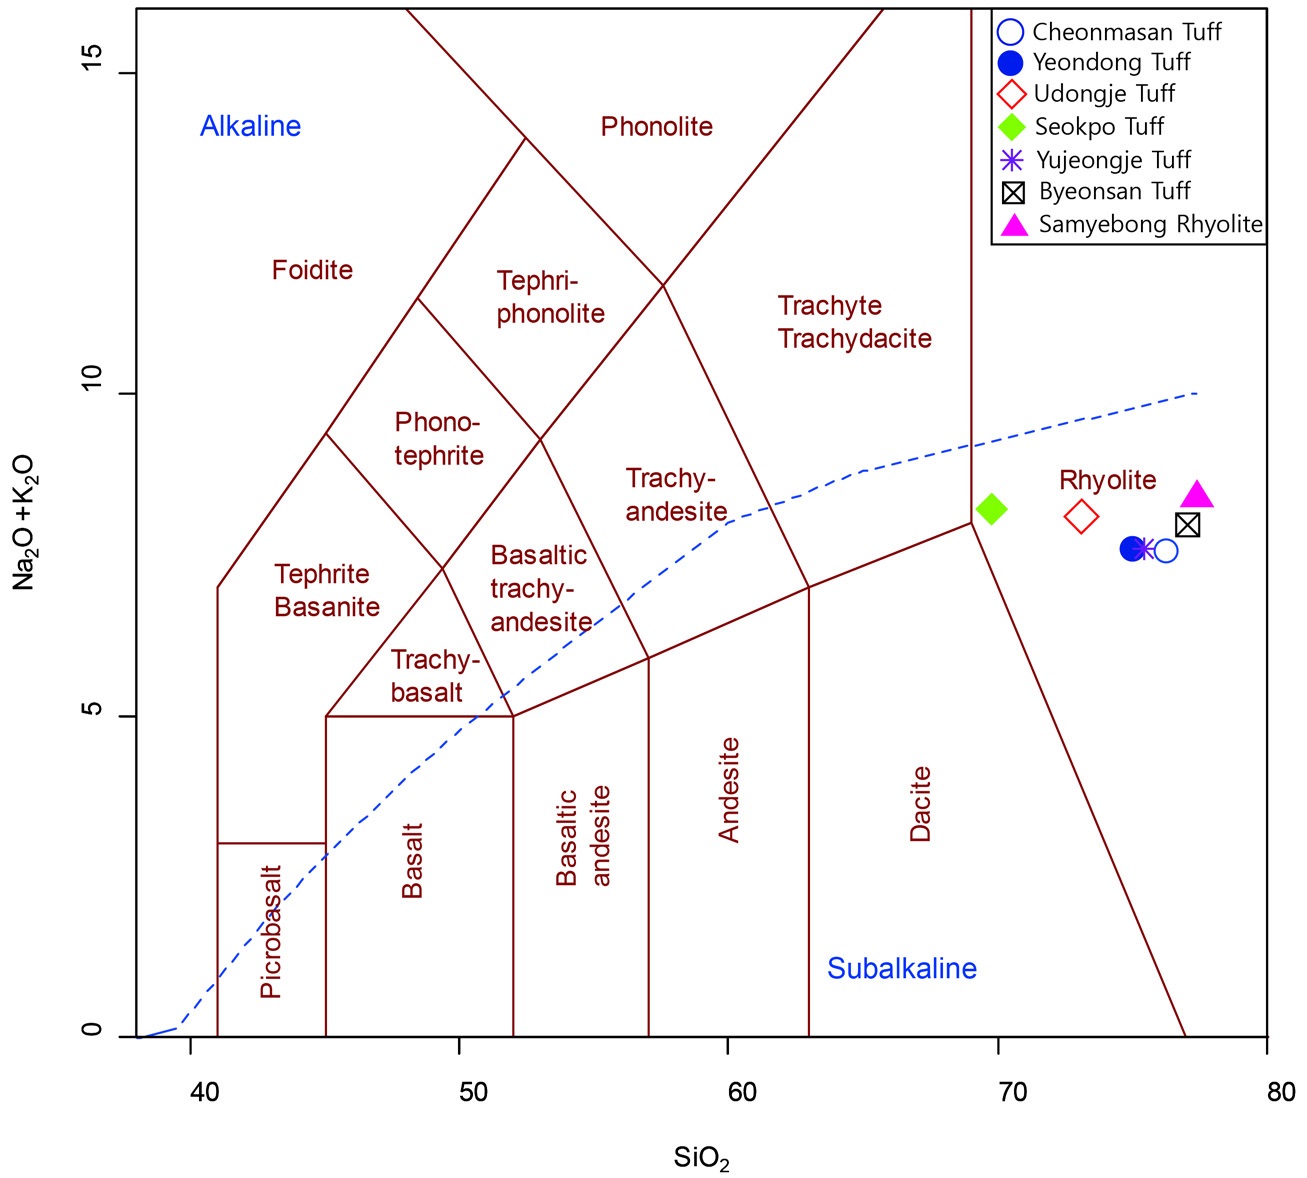 그림 5-7. 부안화산암의 화학적 분류를 위한 TAS (Total Alkali vs. Silica) 도표